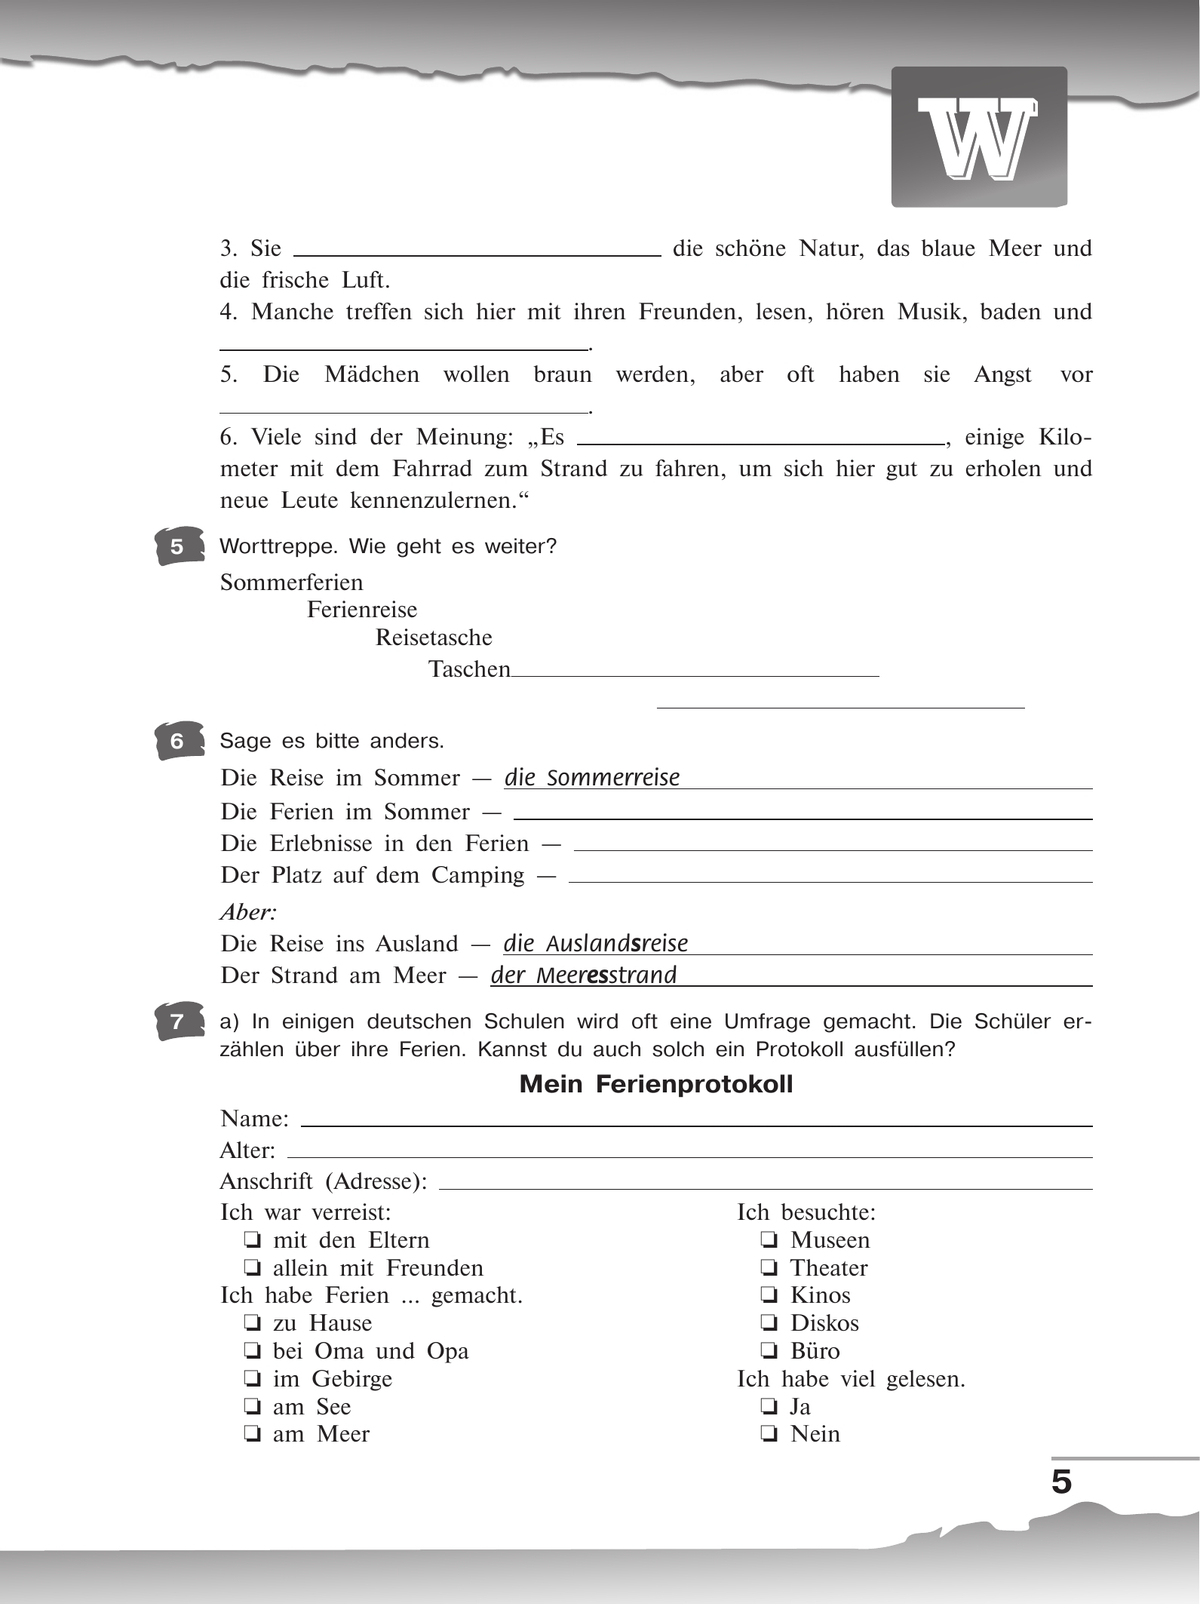 Немецкий язык. Рабочая тетрадь. 9 класс 7